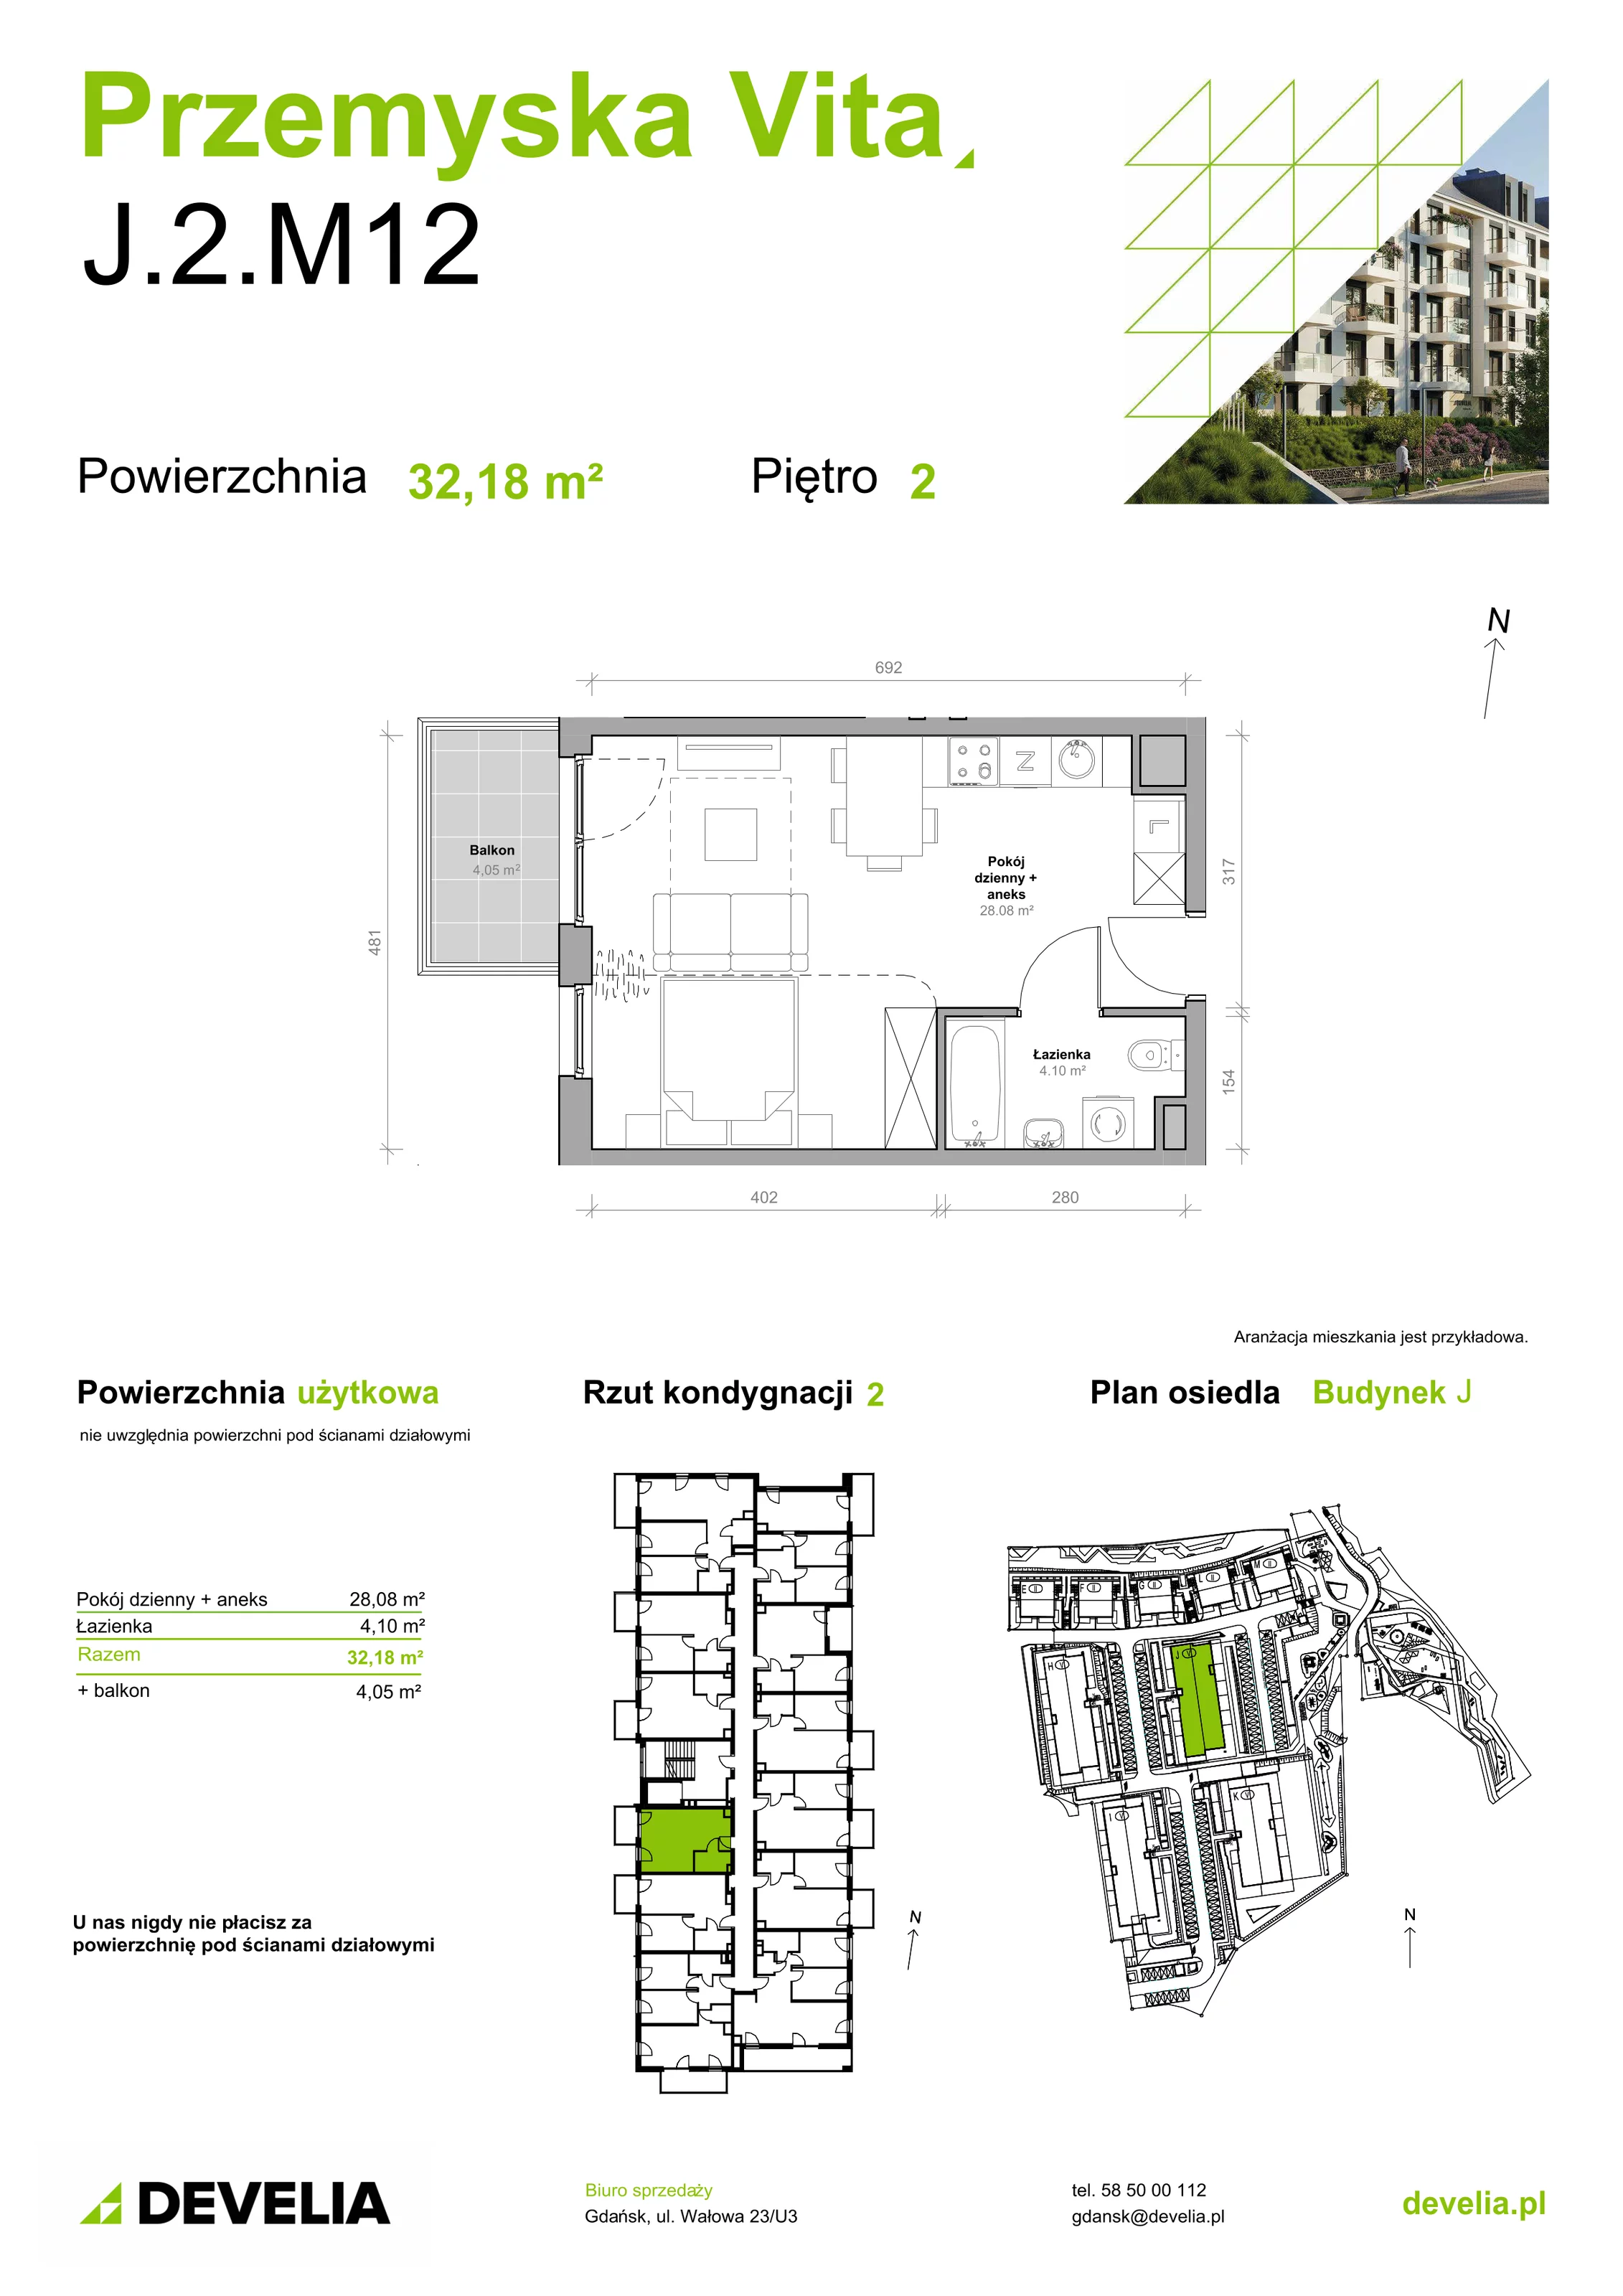 Mieszkanie 32,18 m², piętro 2, oferta nr J.2.M12, Przemyska Vita, Gdańsk, Ujeścisko-Łostowice, Ujeścisko, ul. Przemyska 37